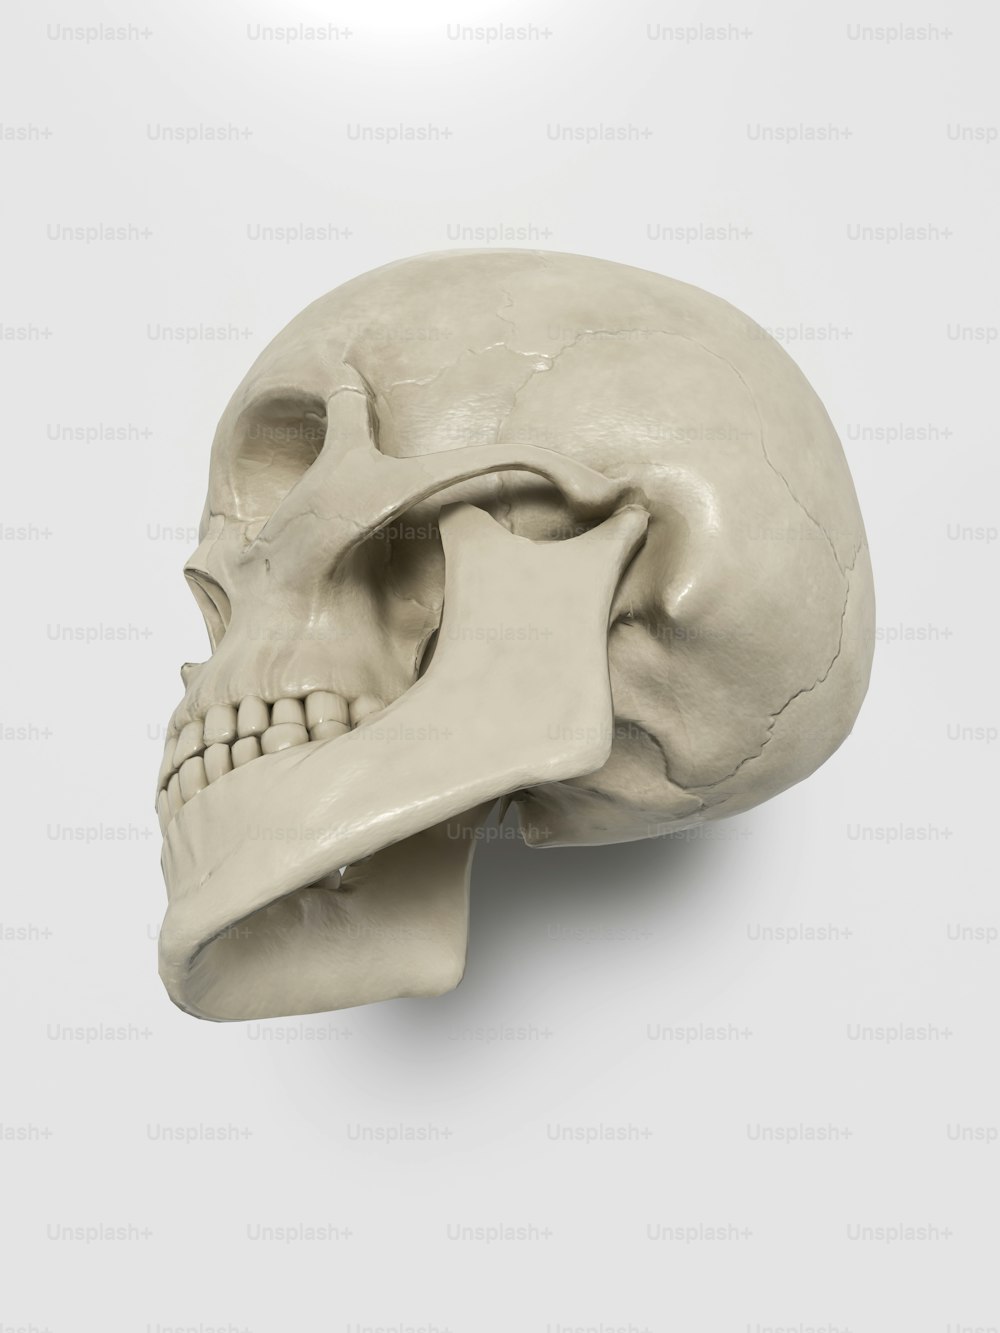 Un modelo de un cráneo humano sobre un fondo blanco